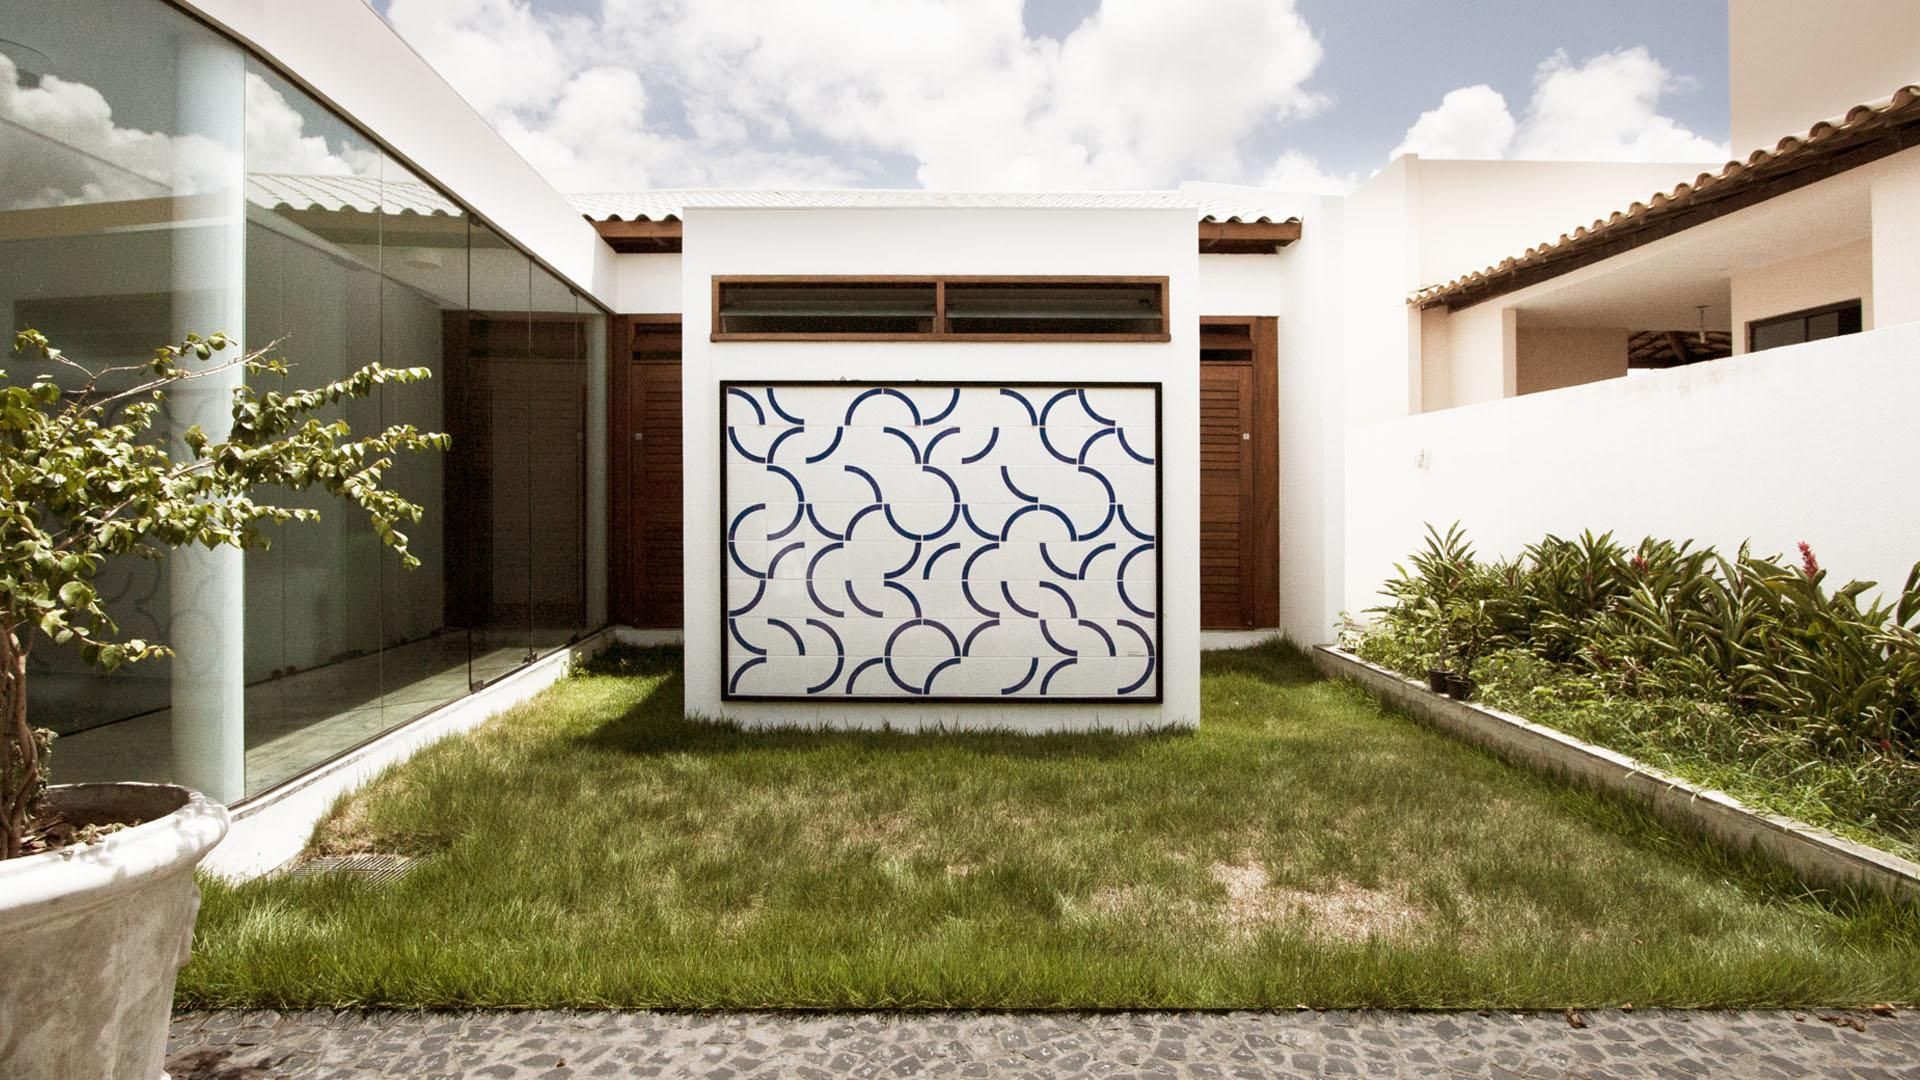 RESIDÊNCIA PÁTIO ARUANA, Coletivo de Arquitetos Coletivo de Arquitetos Casas de estilo minimalista